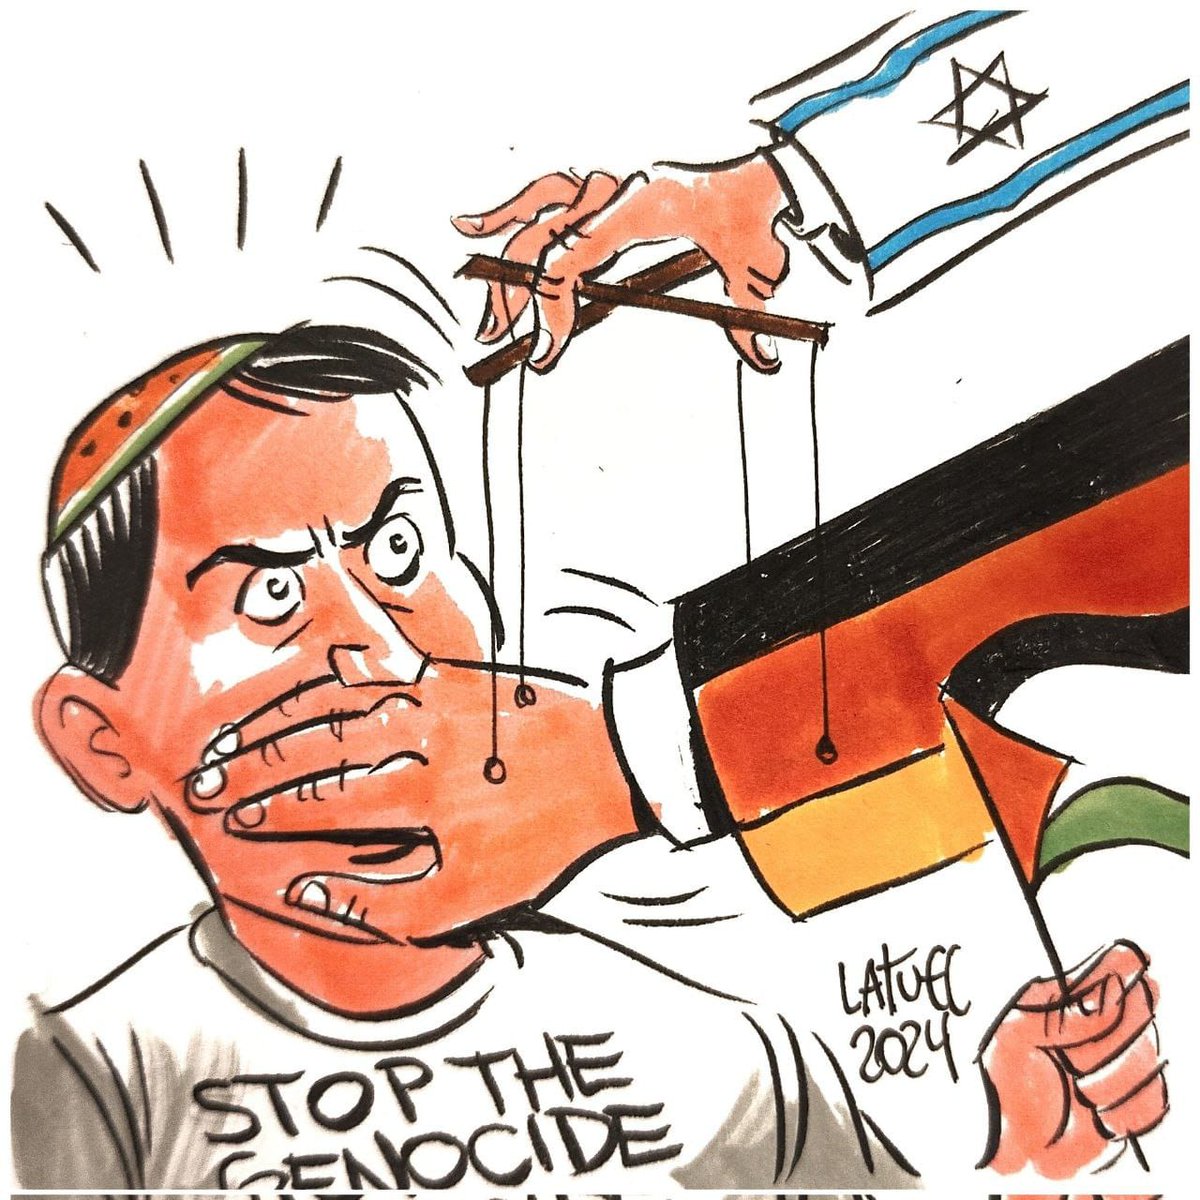 'Seguindo a antiga tradição de silenciar as vozes judaicas, a Alemanha agora tem como alvo os judeus que se manifestam contra o genocídio de Israel em Gaza. Vergonhoso, mas não surpreendente.' Carlos Latuff.